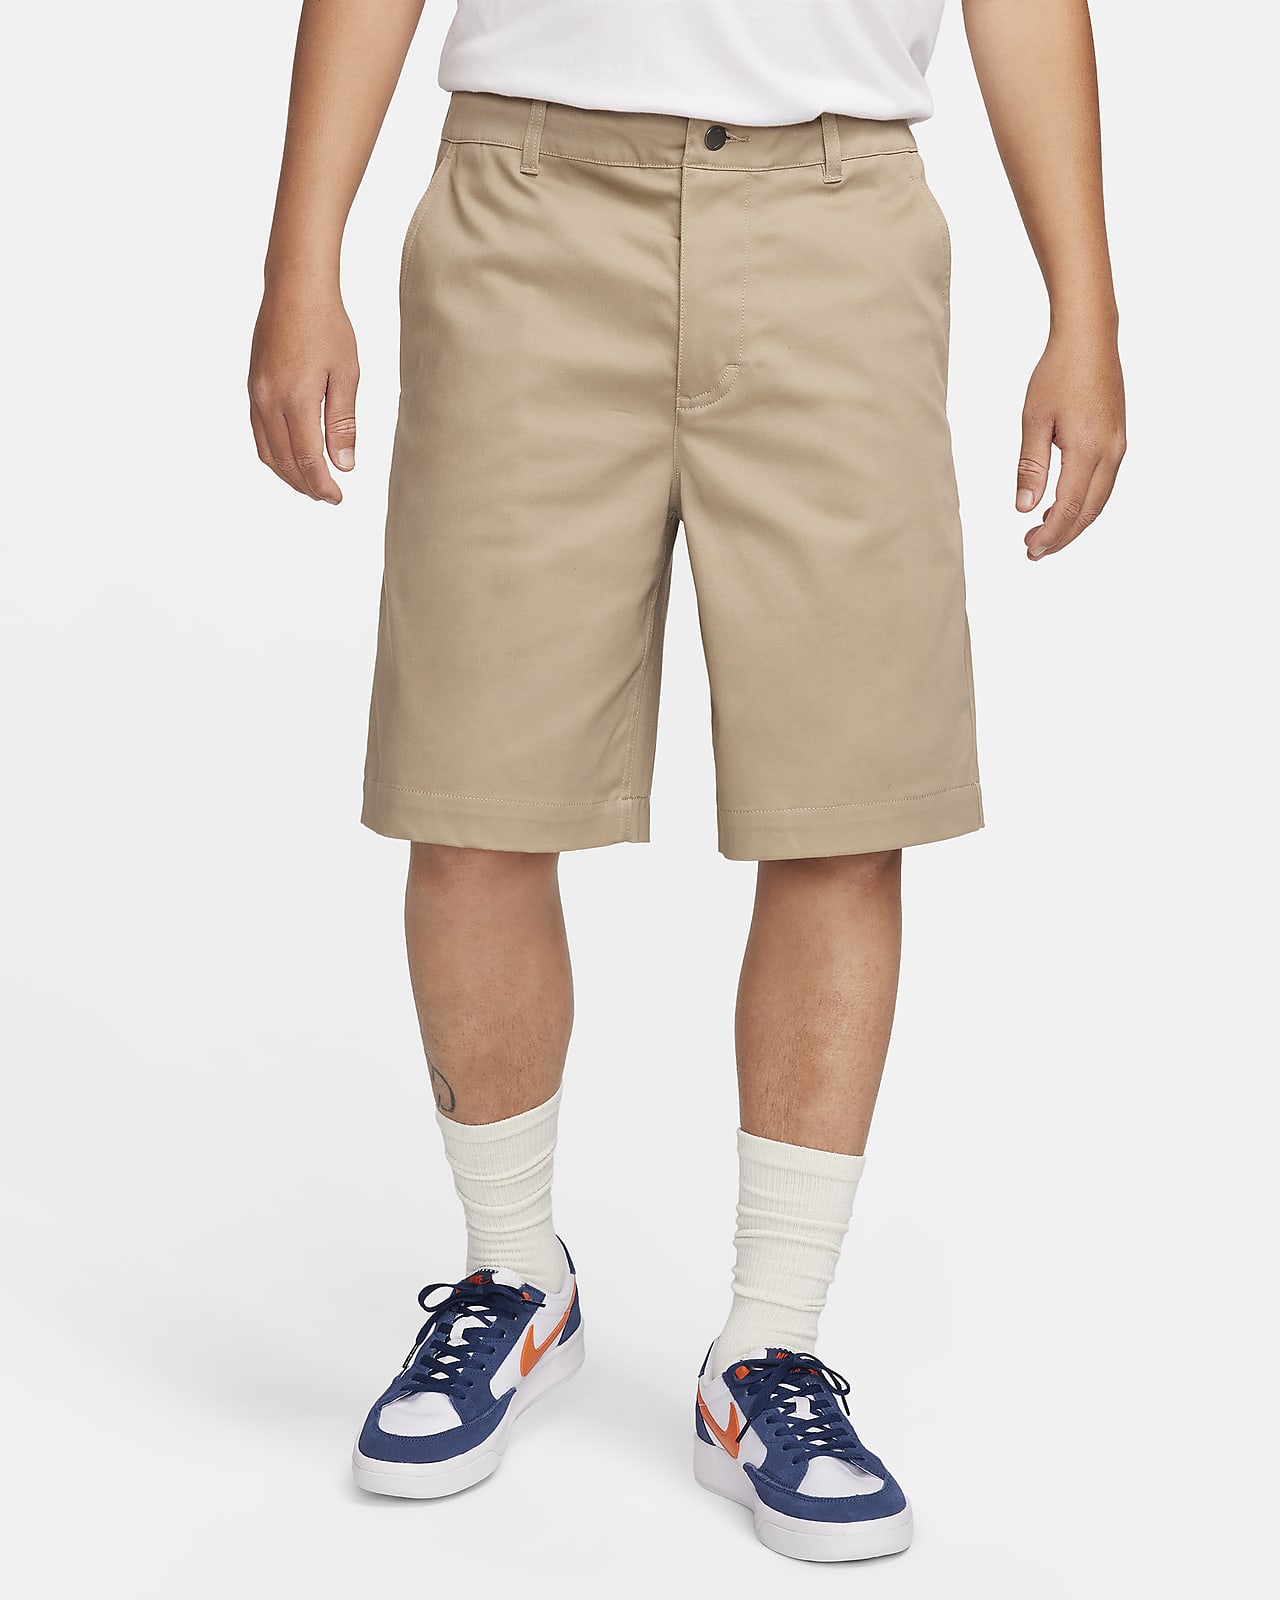 Nickel Chino Short - MEN Shorts